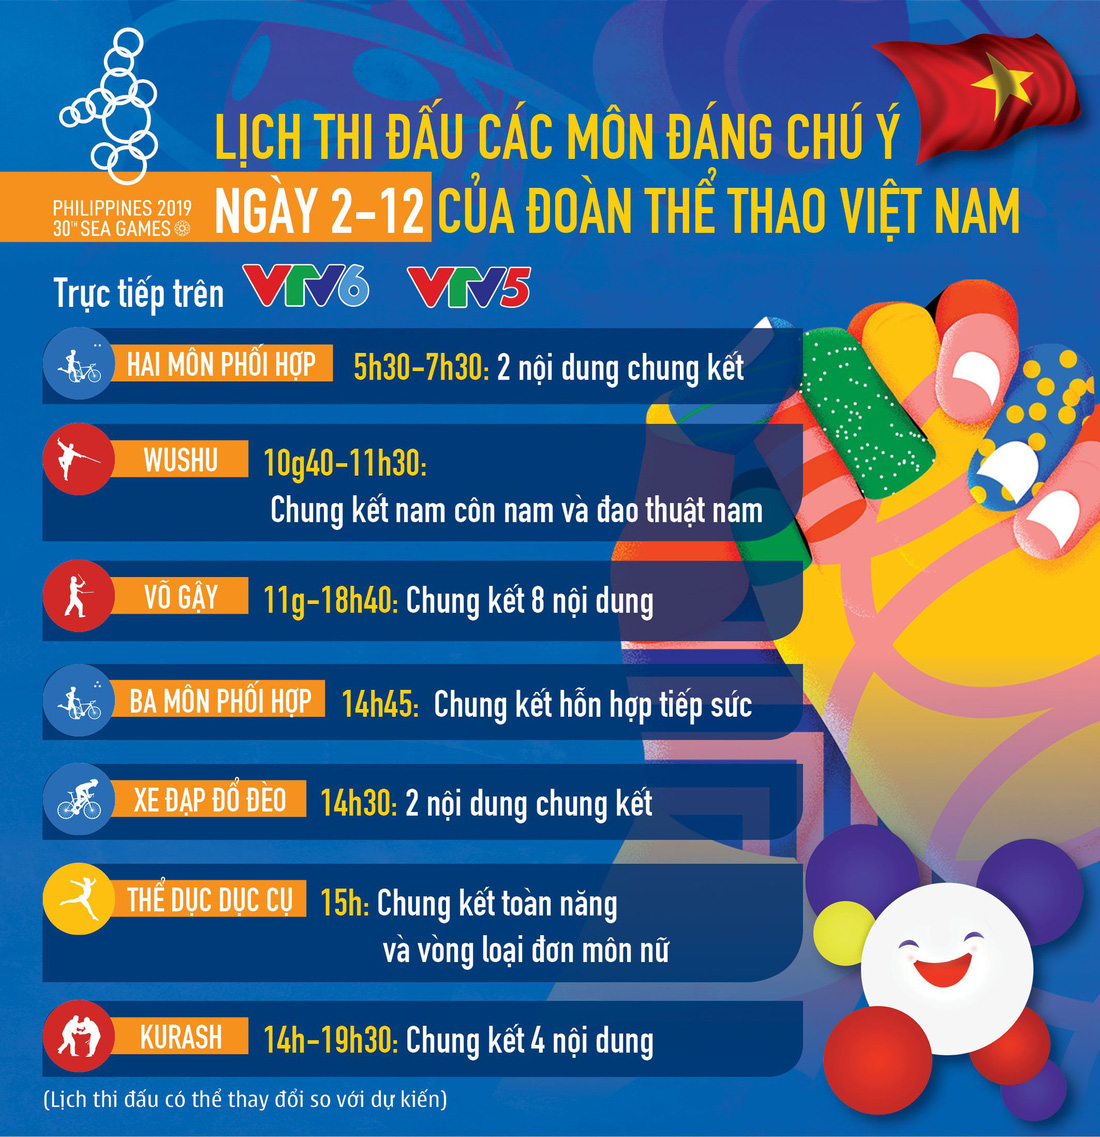 Lịch thi đấu của đoàn thể thao Việt Nam tại SEA Games 30 ngày 2-12 - Ảnh 1.